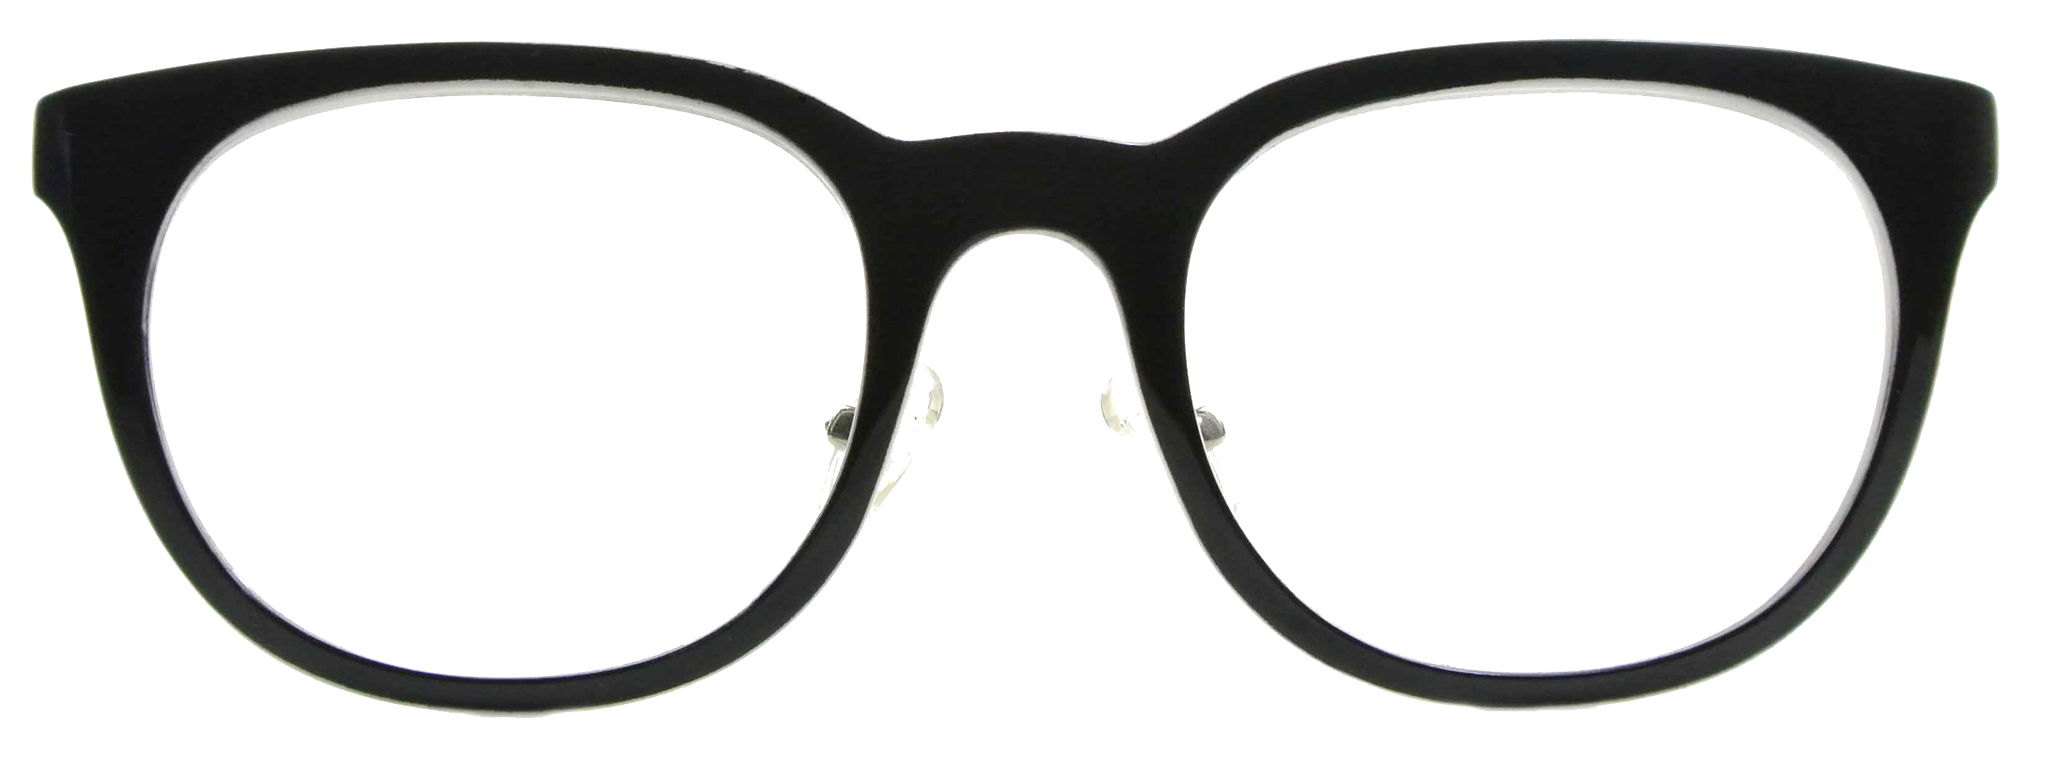 Hipster Glasses PNG изображения фон